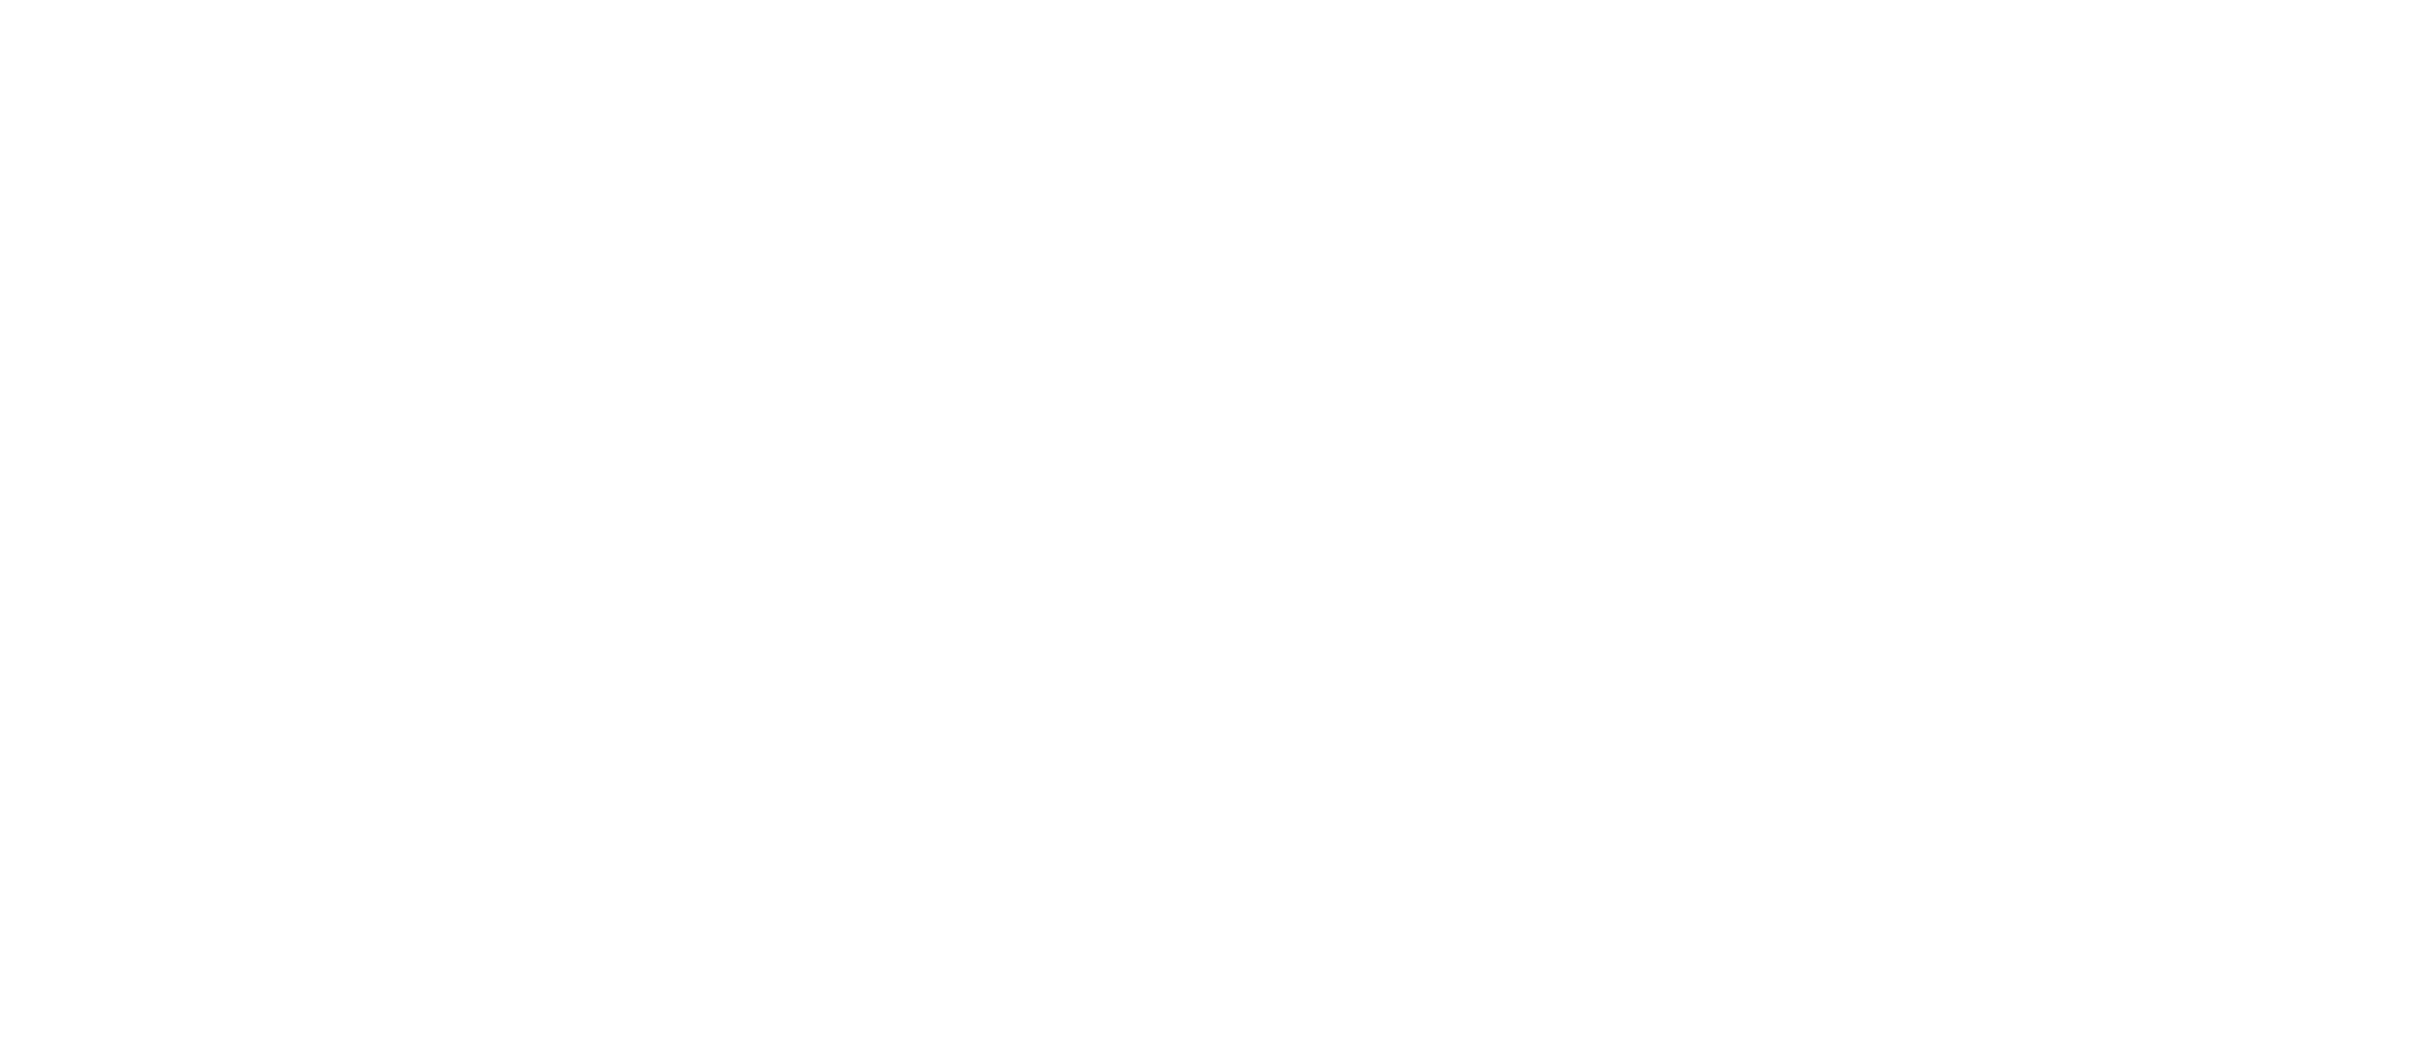 Concerto Media logo 01